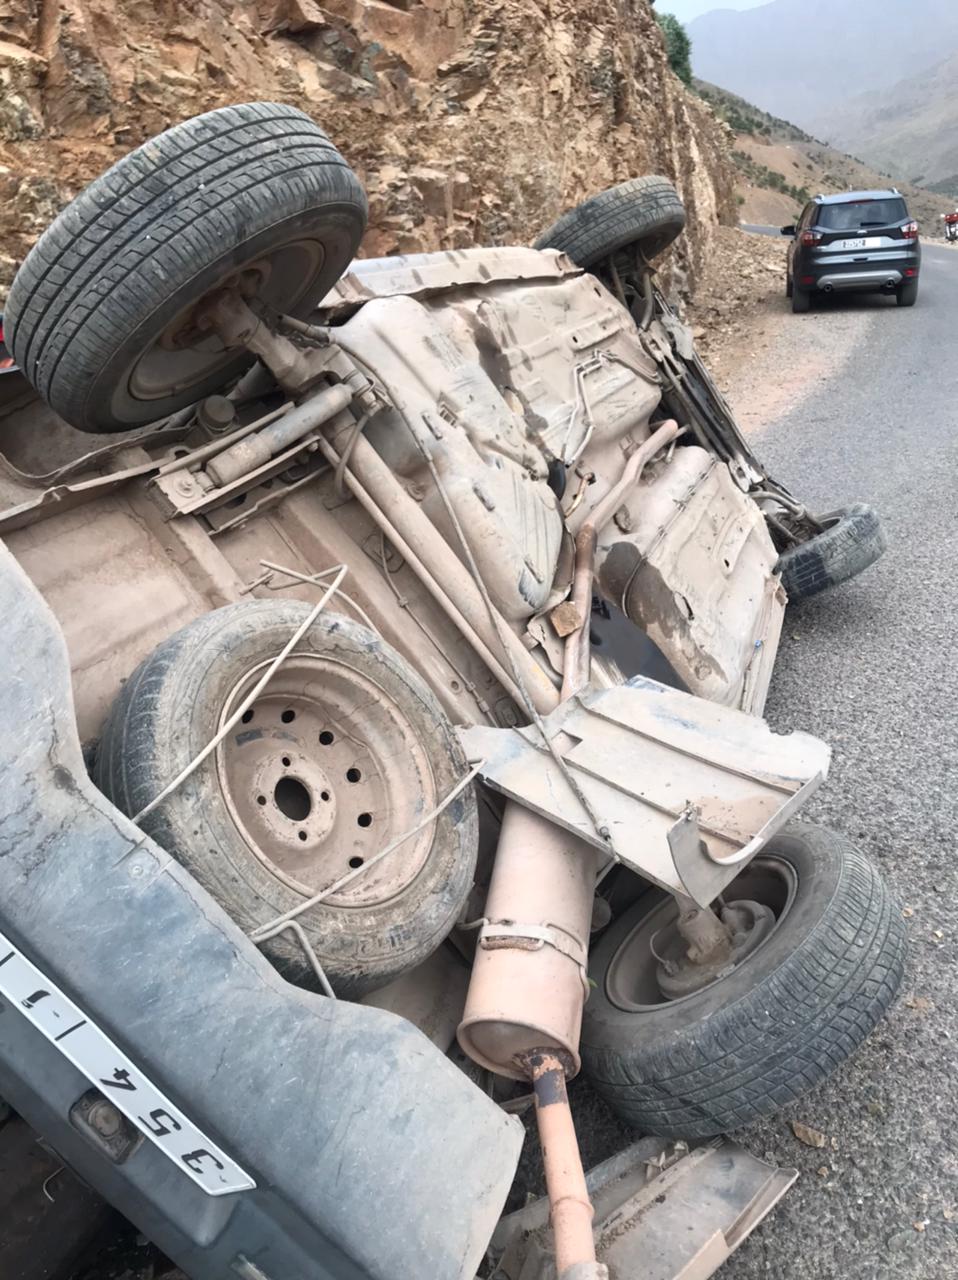 قتيل وجرحى في حادث انقلاب سيارة في عمق الجبل بالحوز